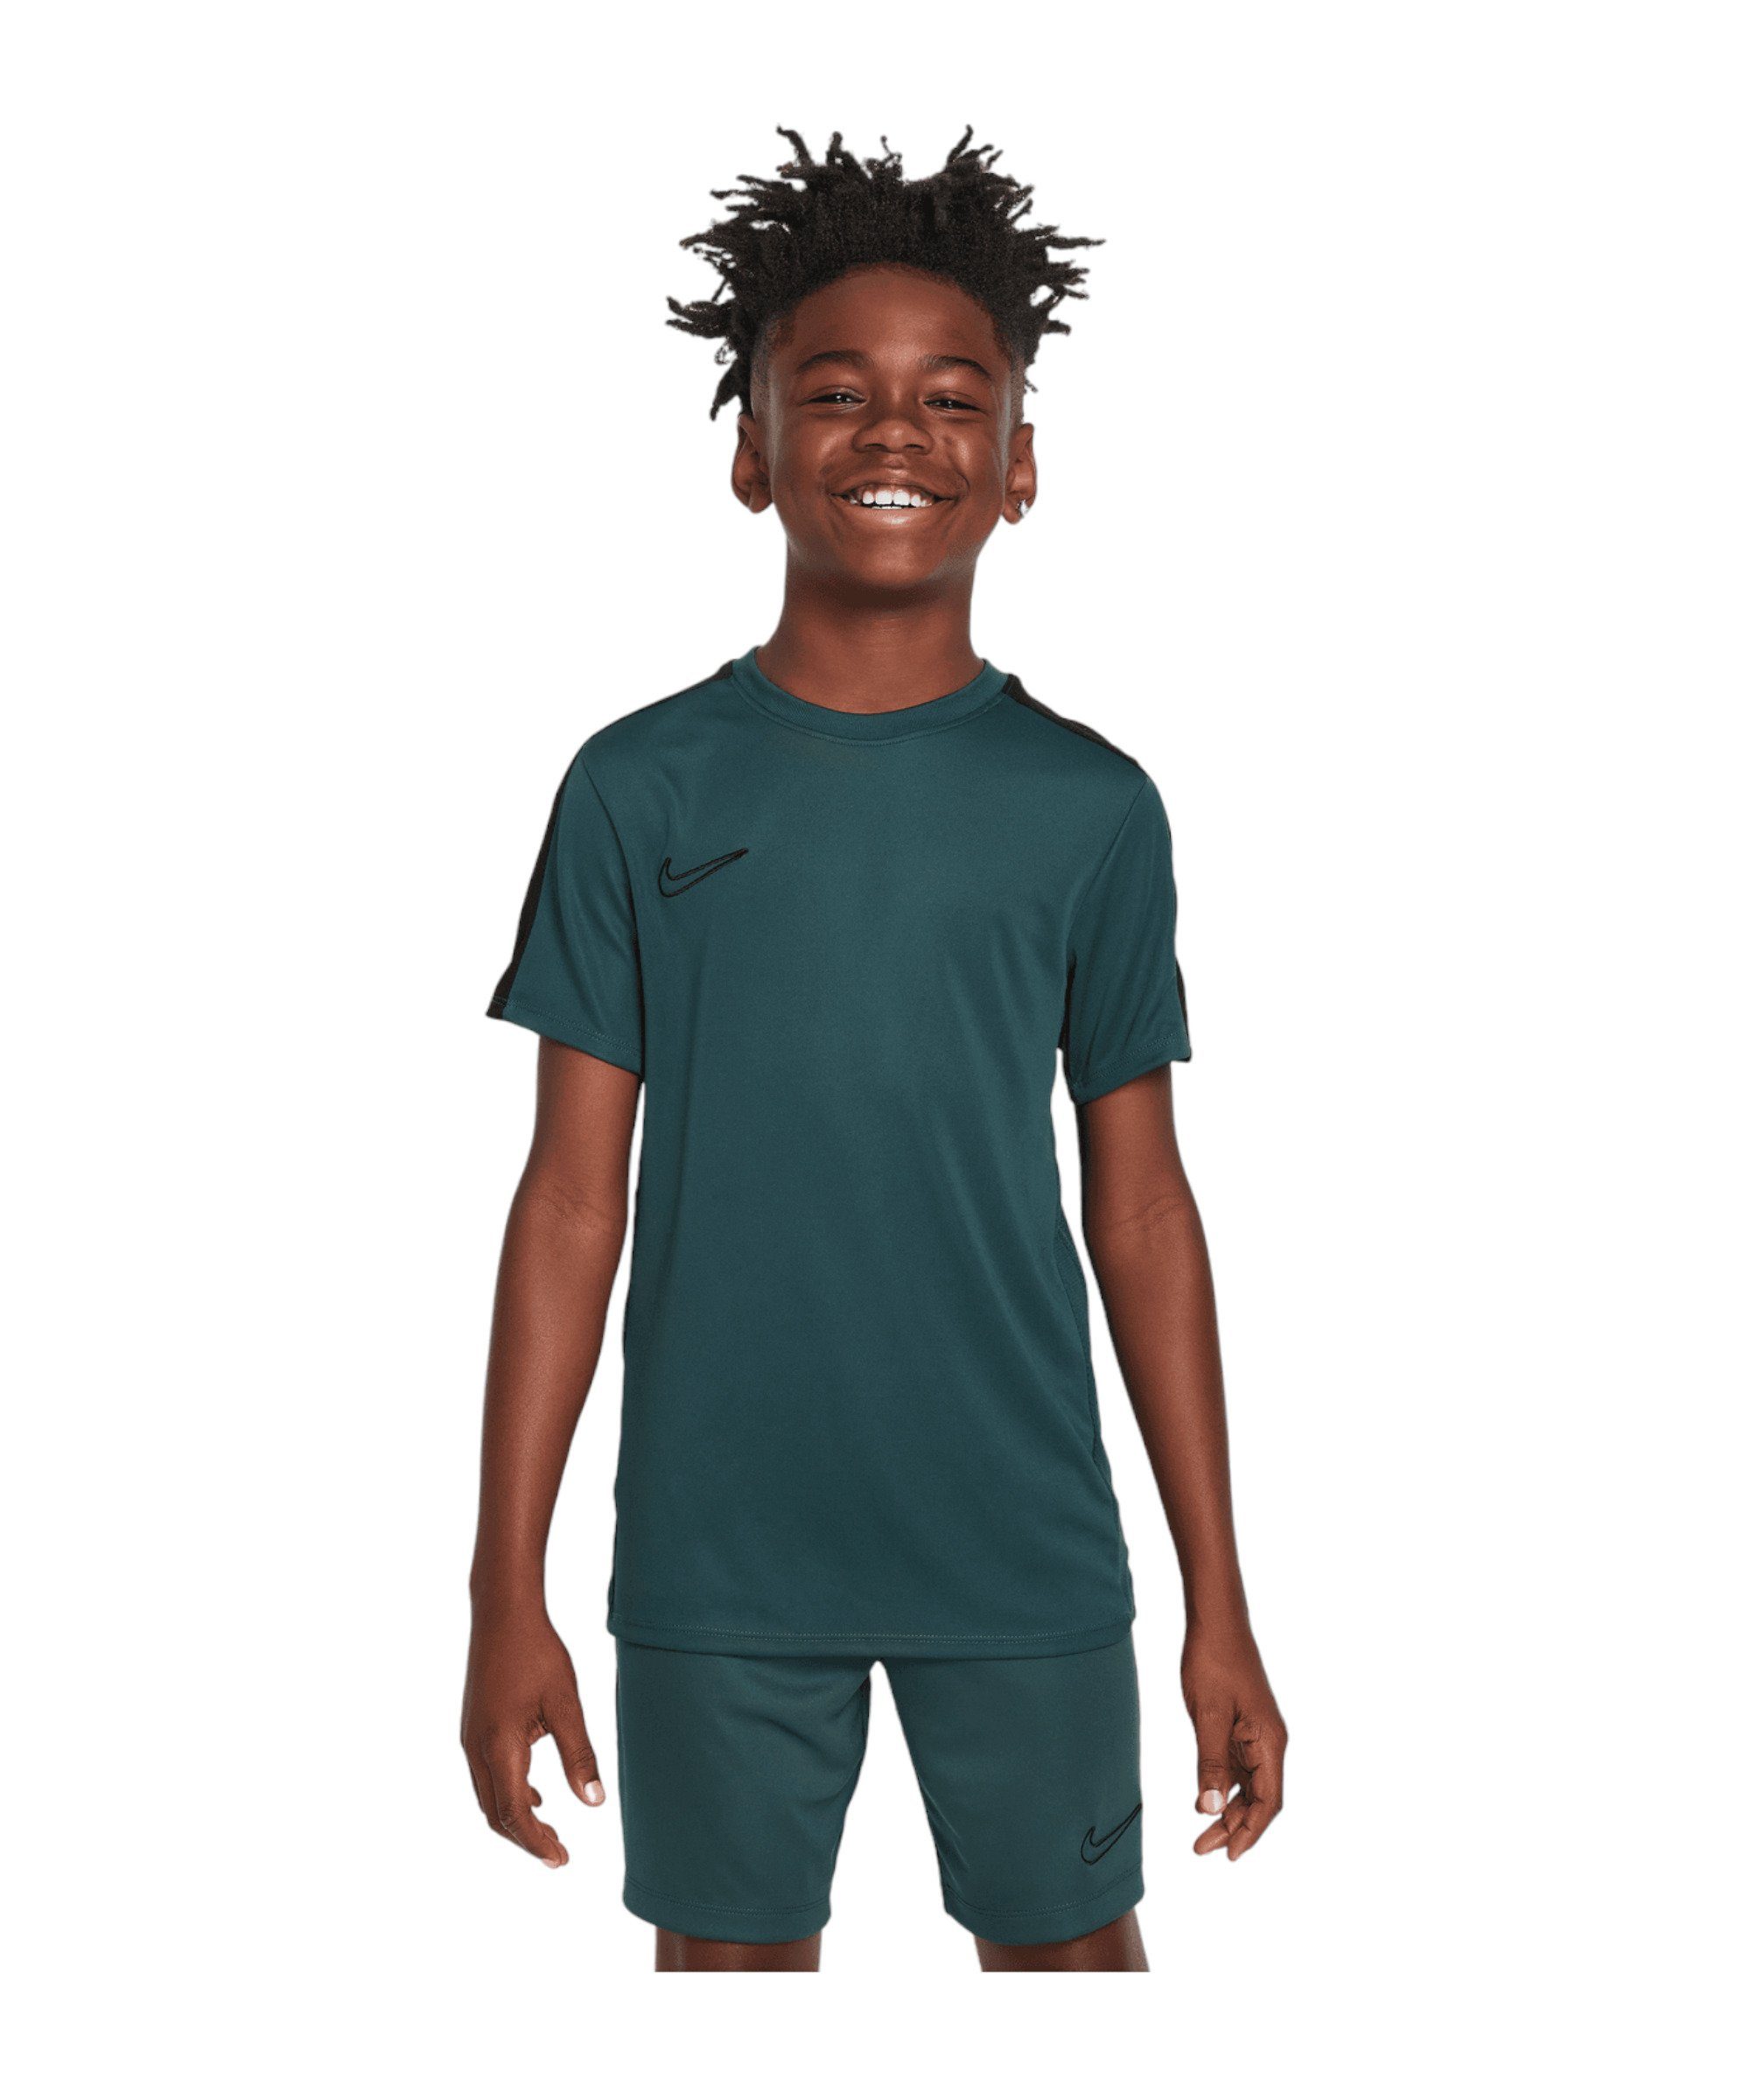 Premium Nike T-Shirt Academy default 23 T-Shirt gruen